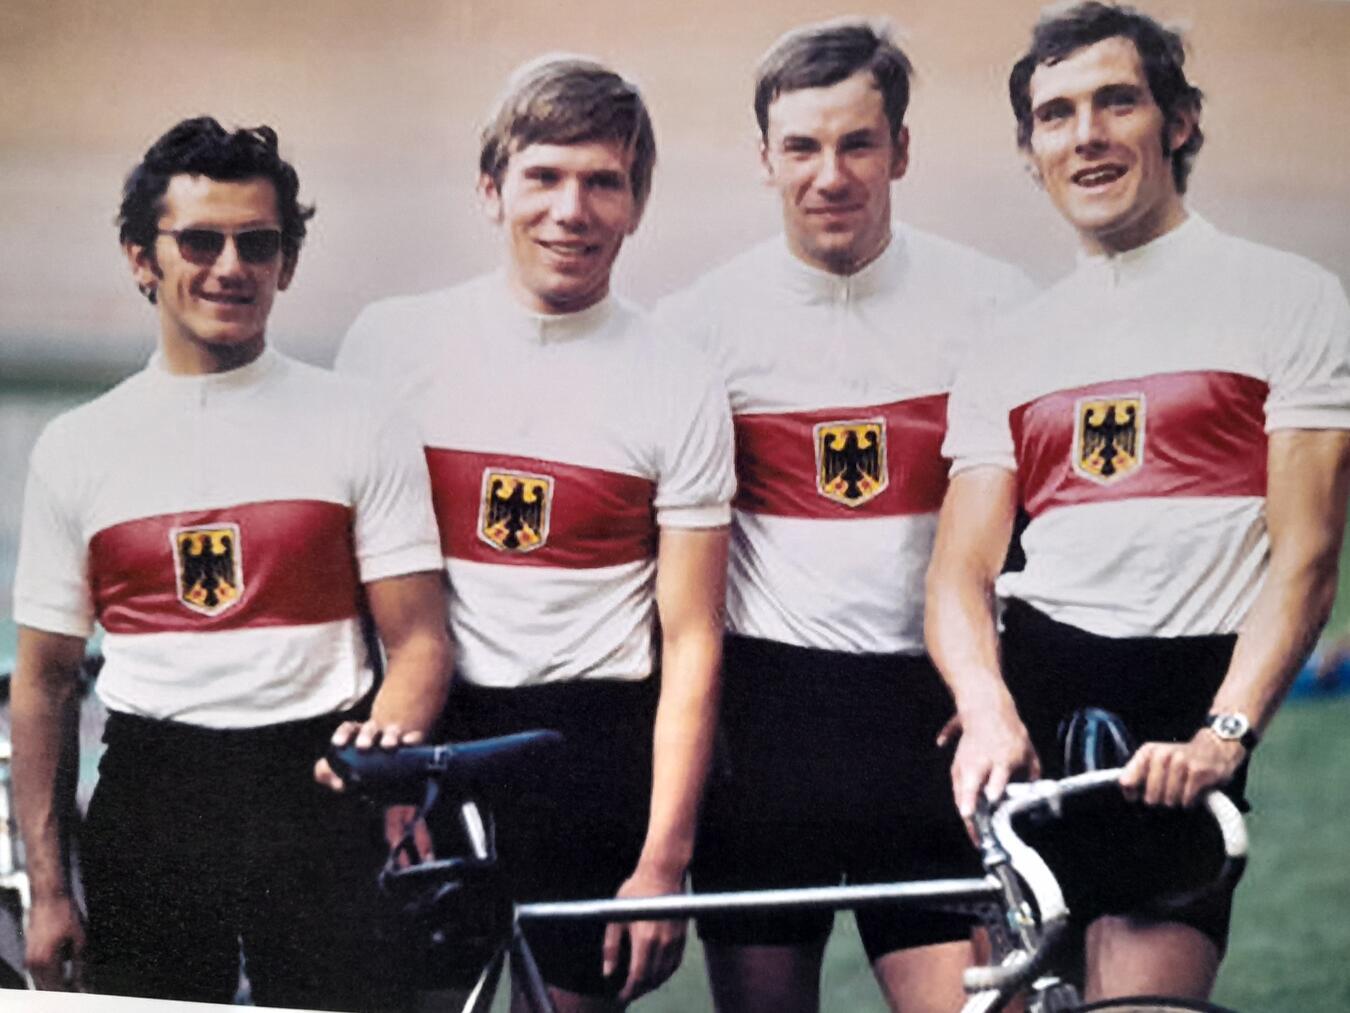 Udo Hempel (r.) und seine Team-Kameraden gewannen 1972 Gold in der Mannschaftsverfolgung. Als immer noch begeisterter Radfahrer bietet Hempel seit vielen Jahren Fahrsicherheitstrainings an. Foto: privat